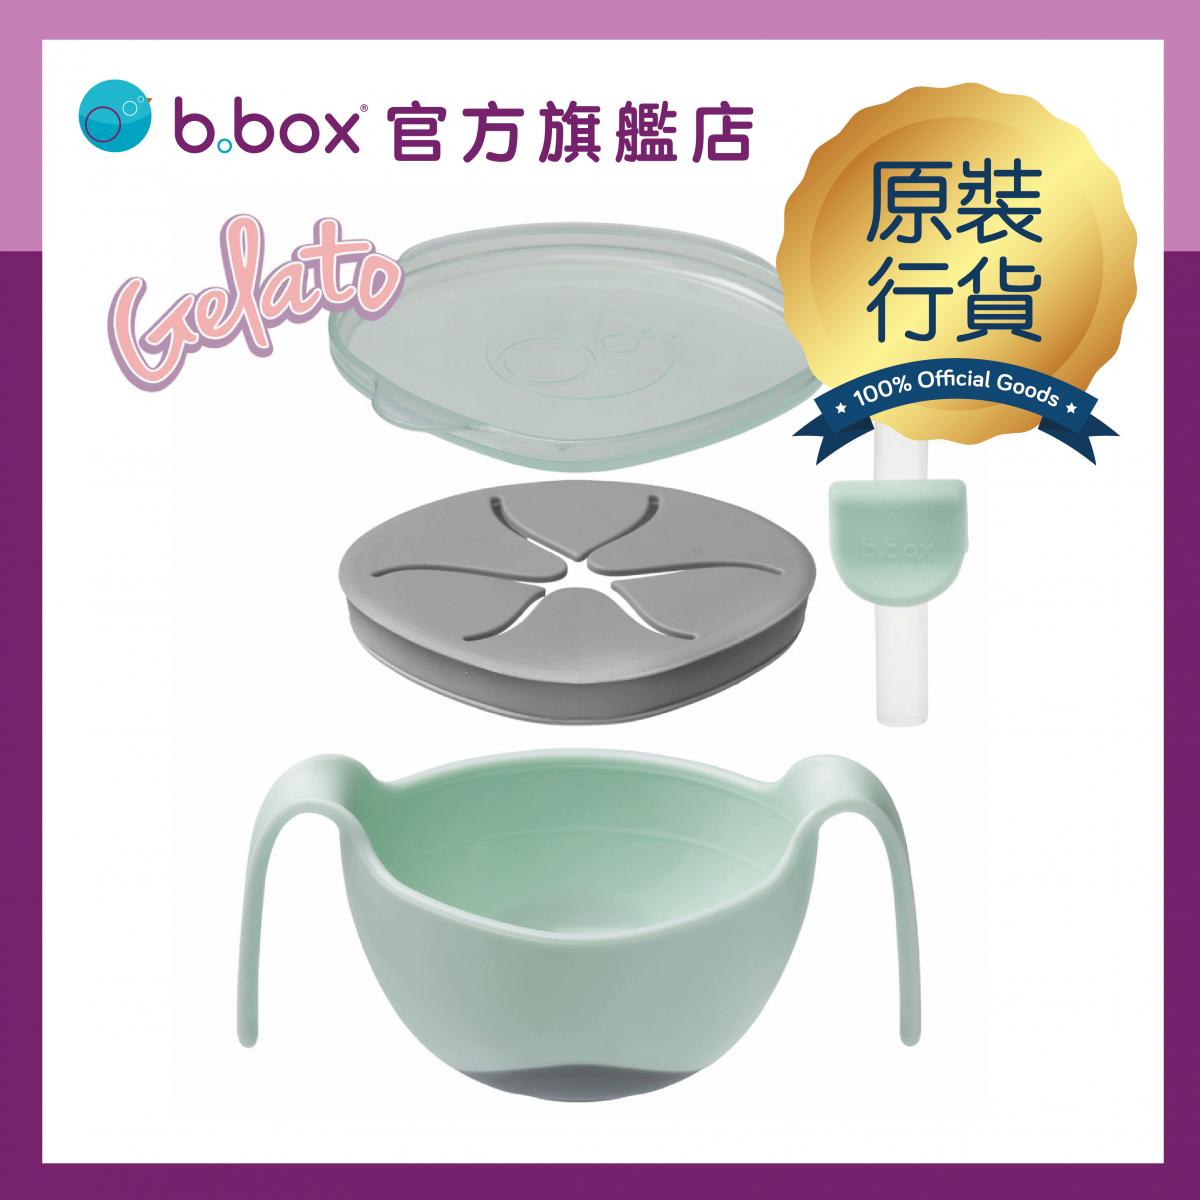 【香港原裝行貨】三合一防滑吸管碗-雪糕系列-綠色